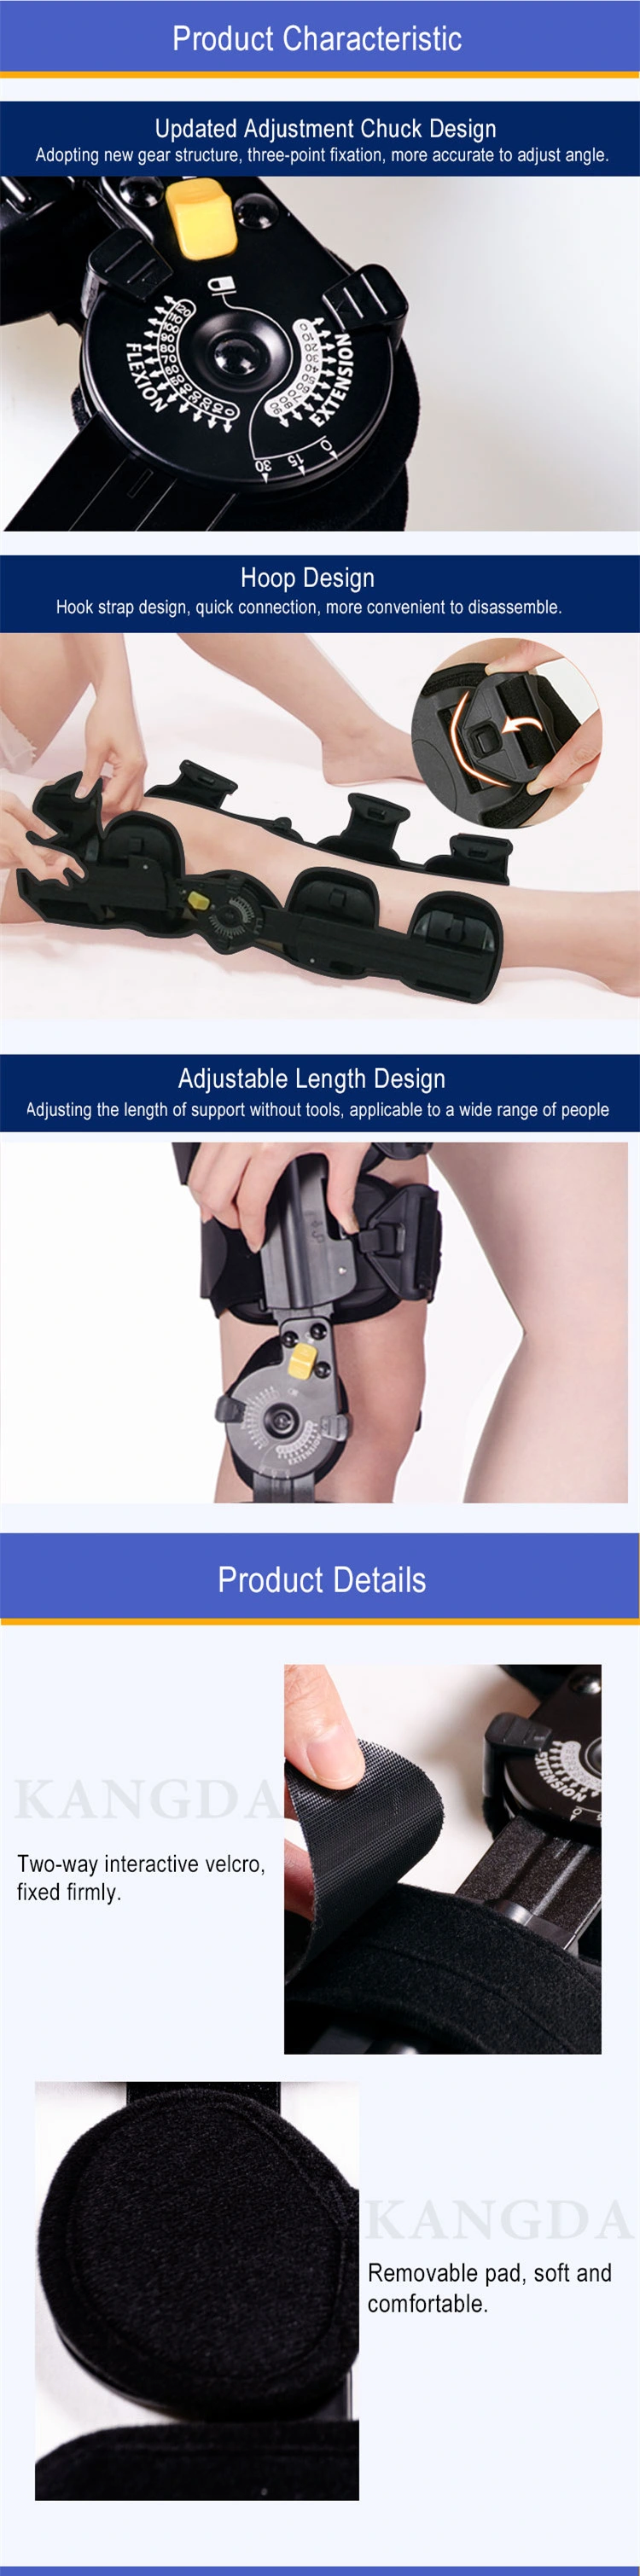 Hinged ROM Knee Brace Orthosis Adjustable Medical Orthopedic Knee Brace